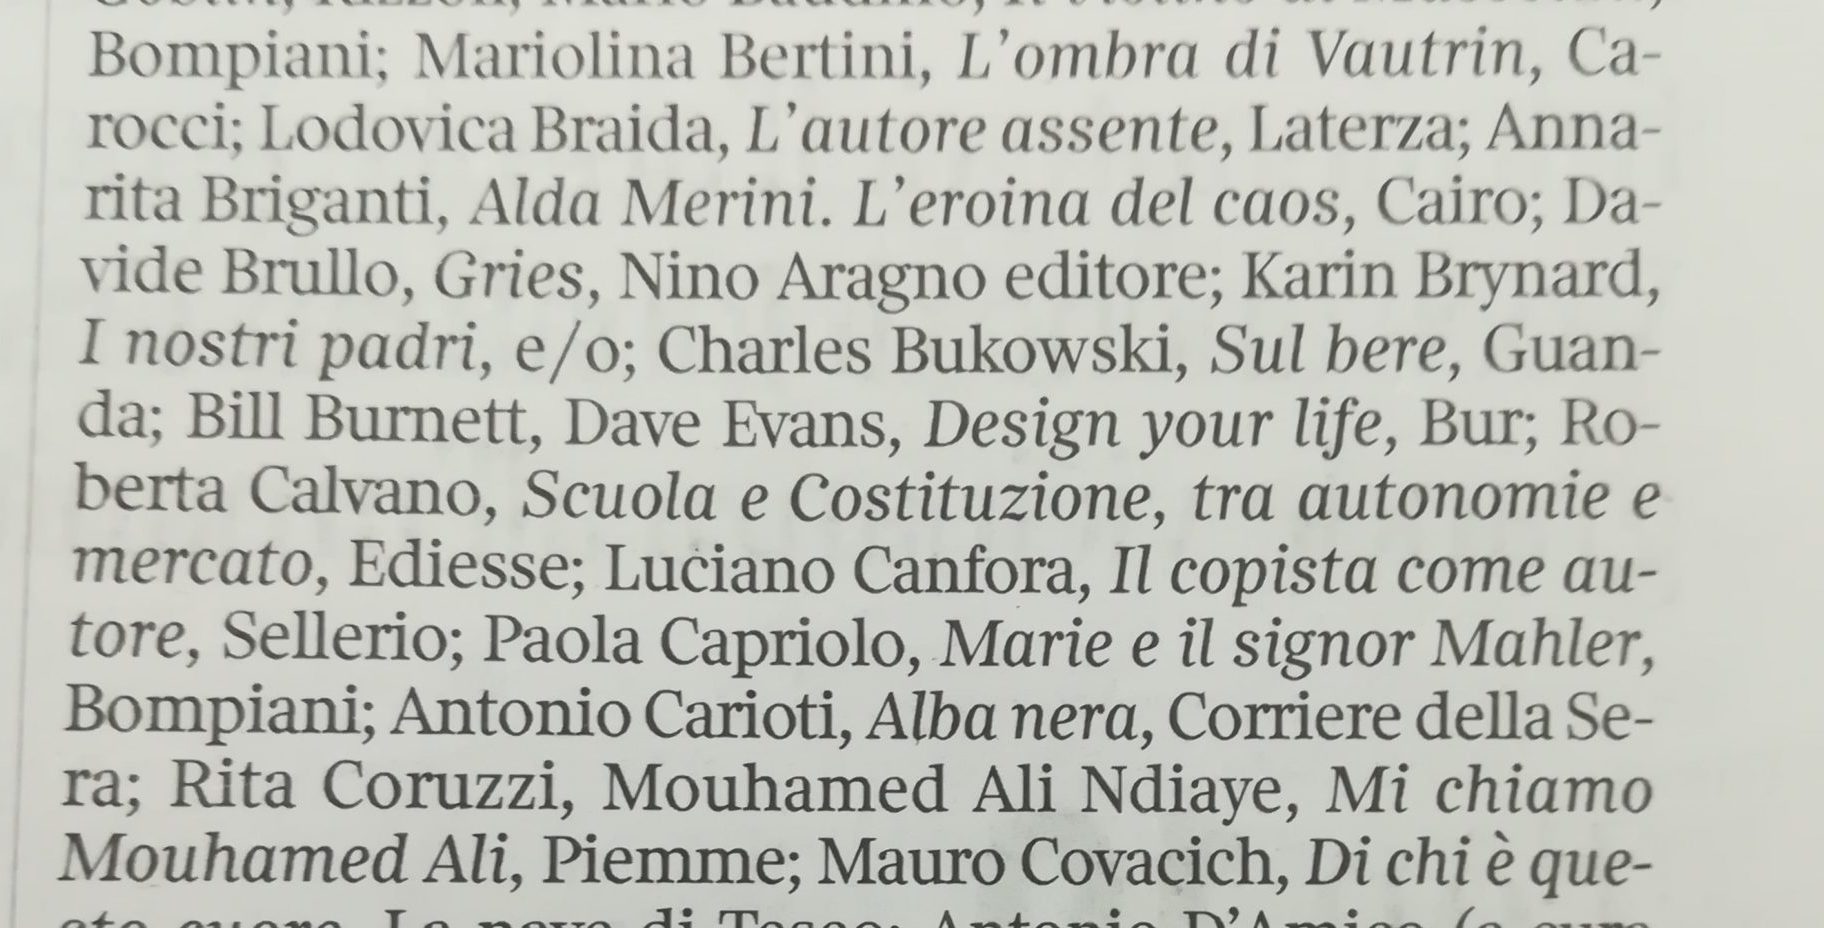 Sono nella classifica dei libri più belli del 2019 stilata dal “Corriere della Sera” (nelle zone infime, tra gli ultimi, tranquilli). Peccato. Era meglio non esserci